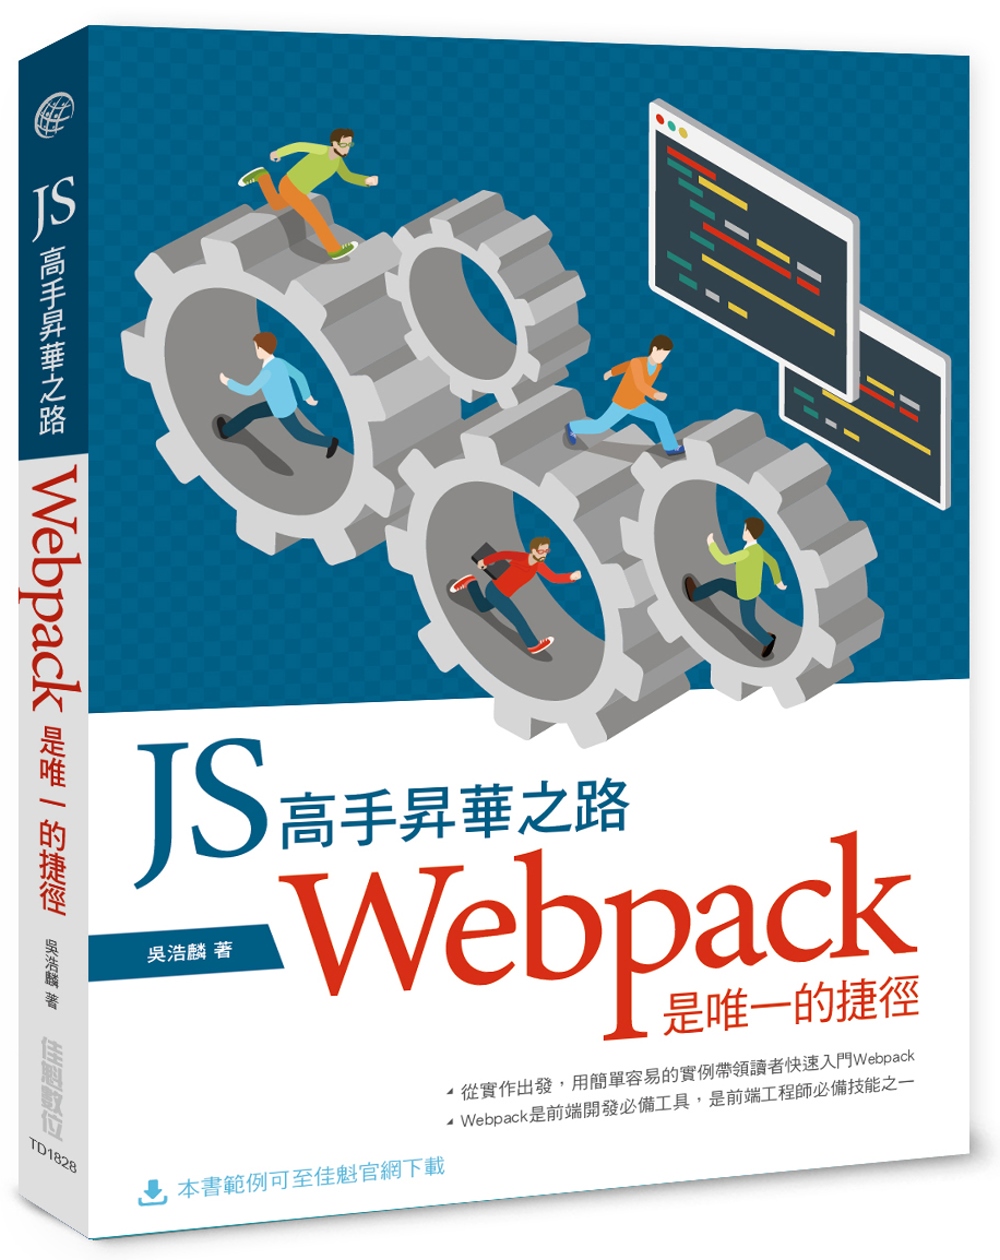 JS高手昇華之路：Webpack是唯一的捷徑